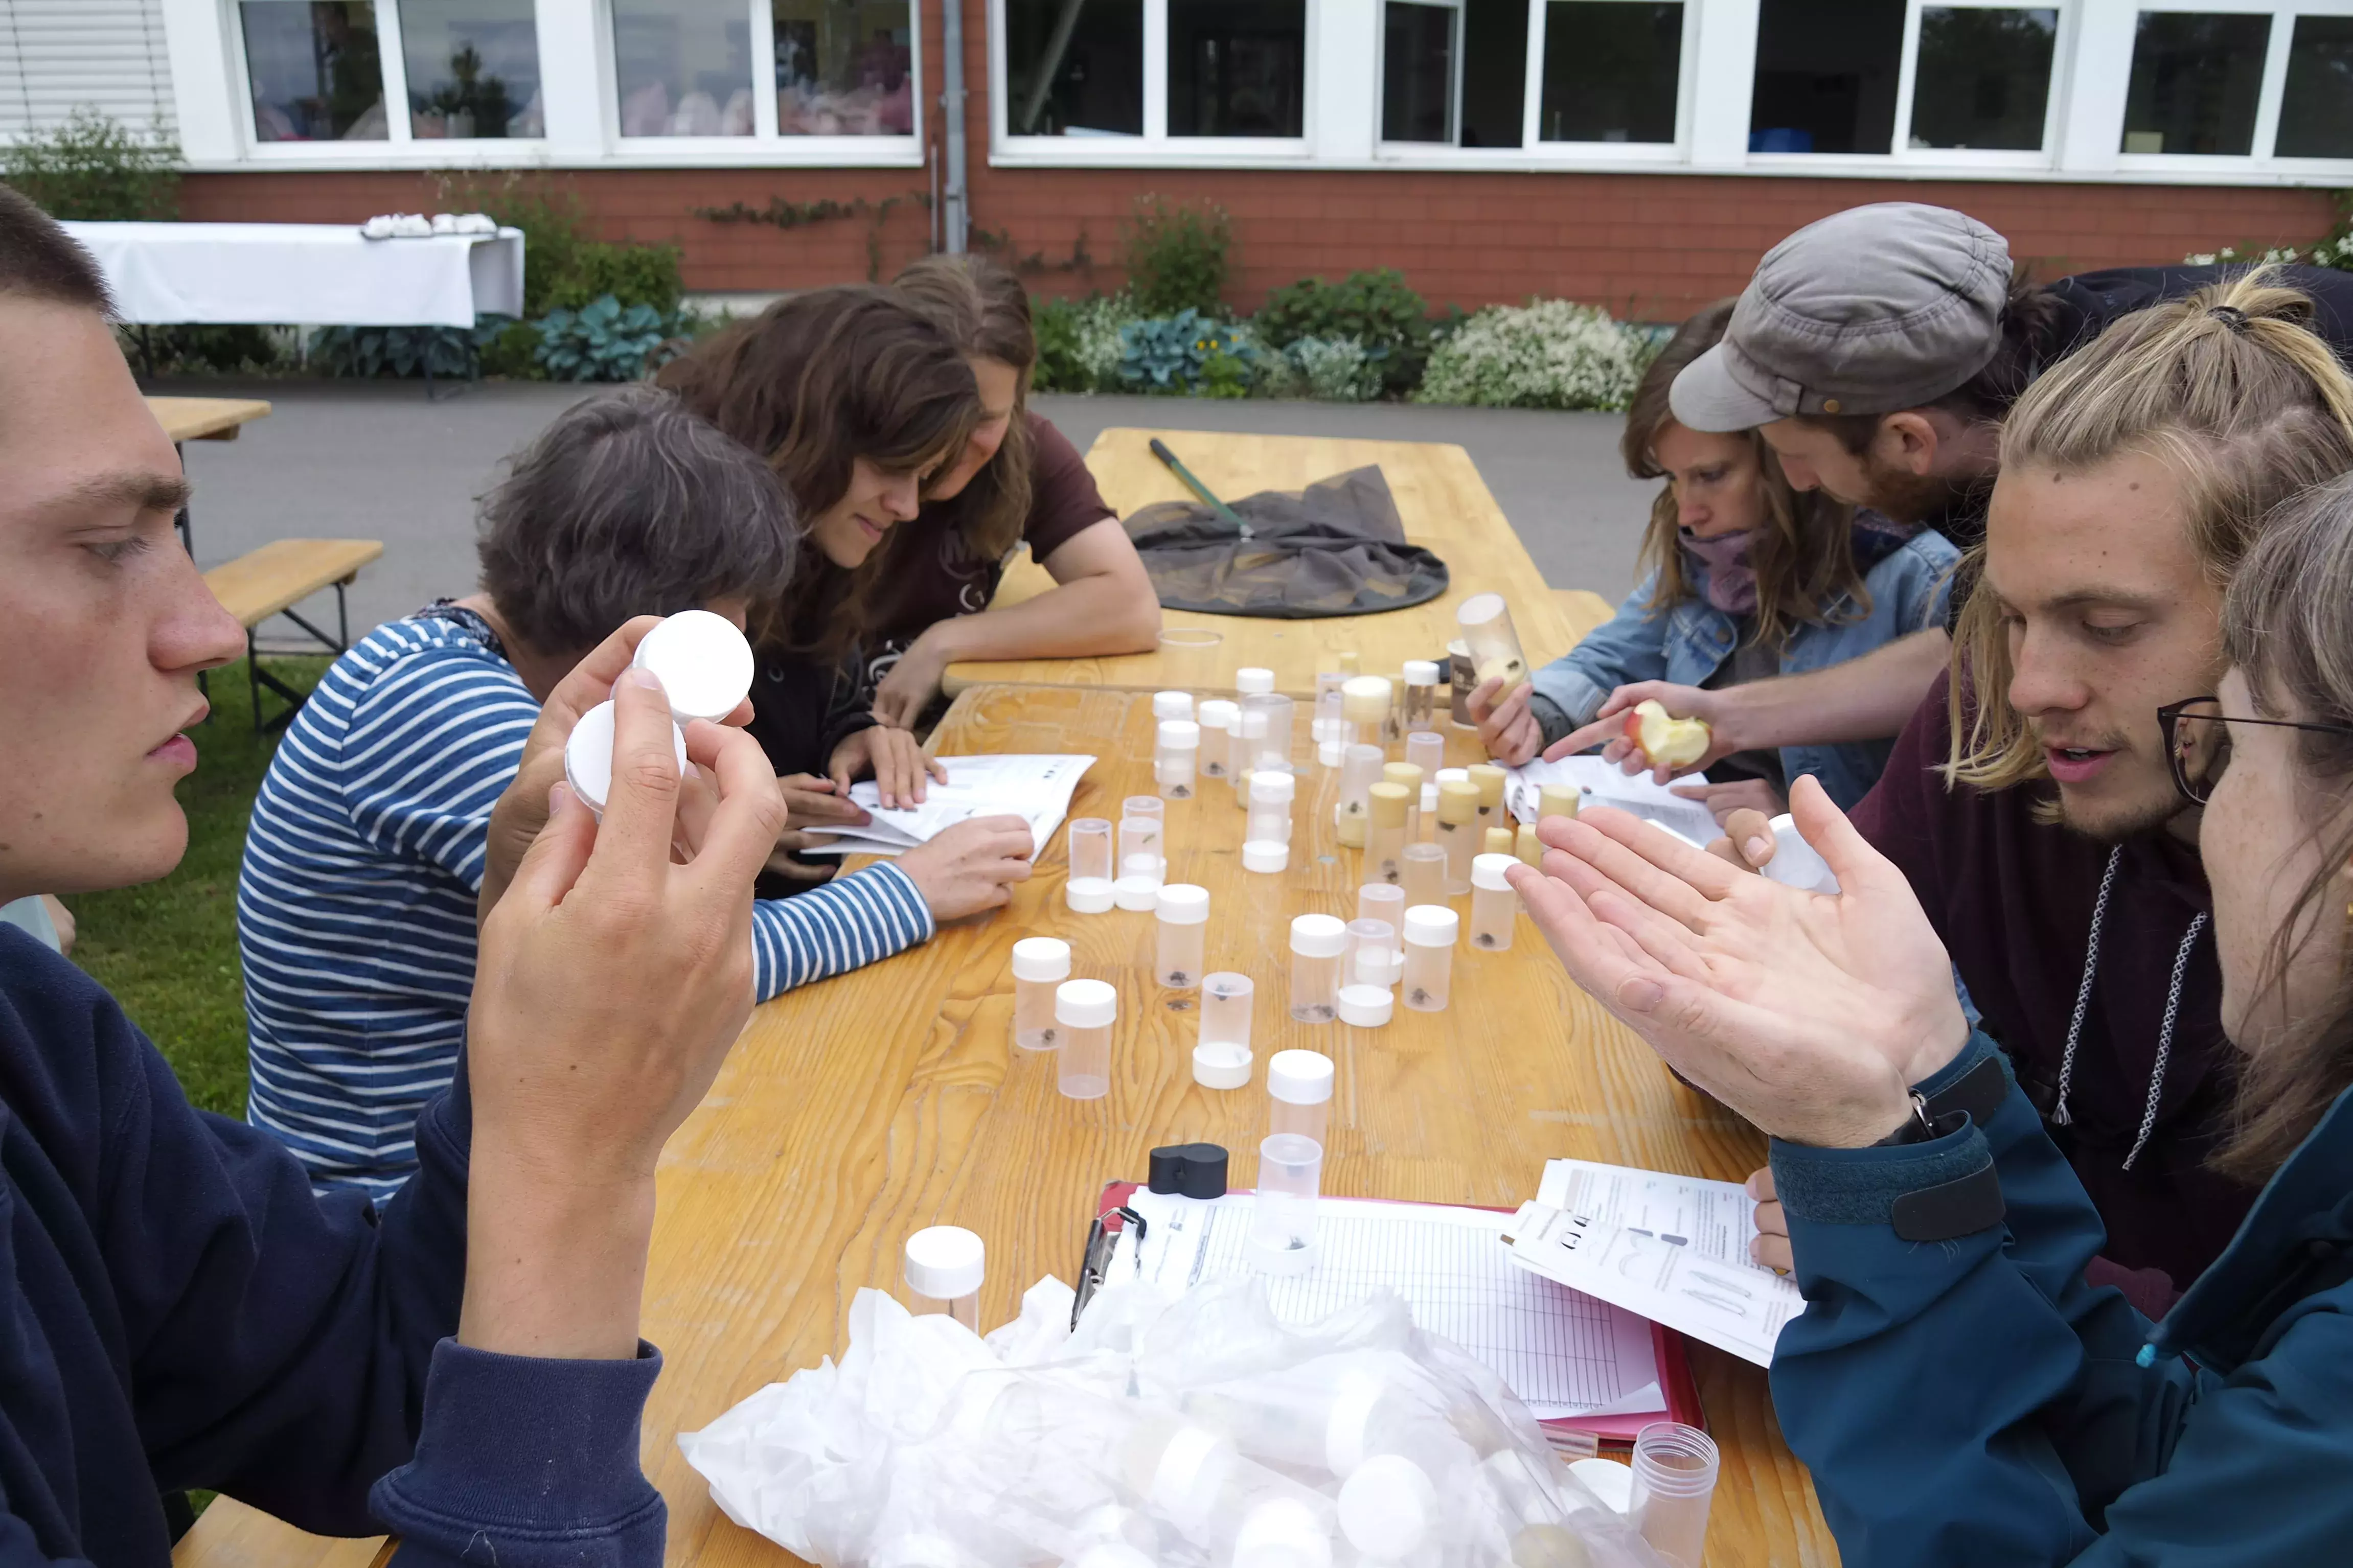 Teilnehmer*innen bestimmen eingesammelte Insekten, bevor diese wieder freigelassen werden. Foto: Regula Treichler Bratschi